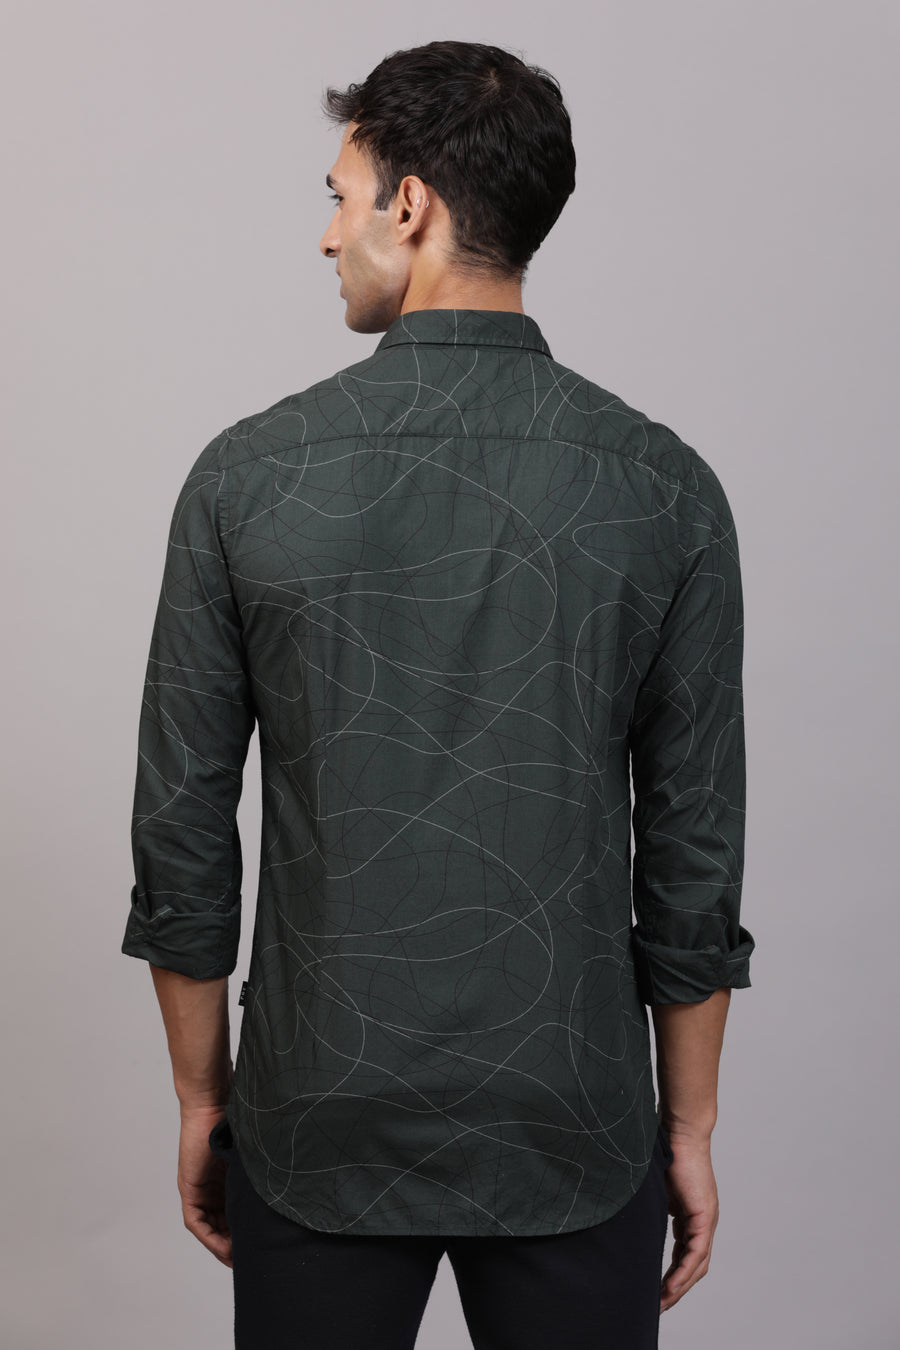 Solar - Abstract Printed Shirt - Green